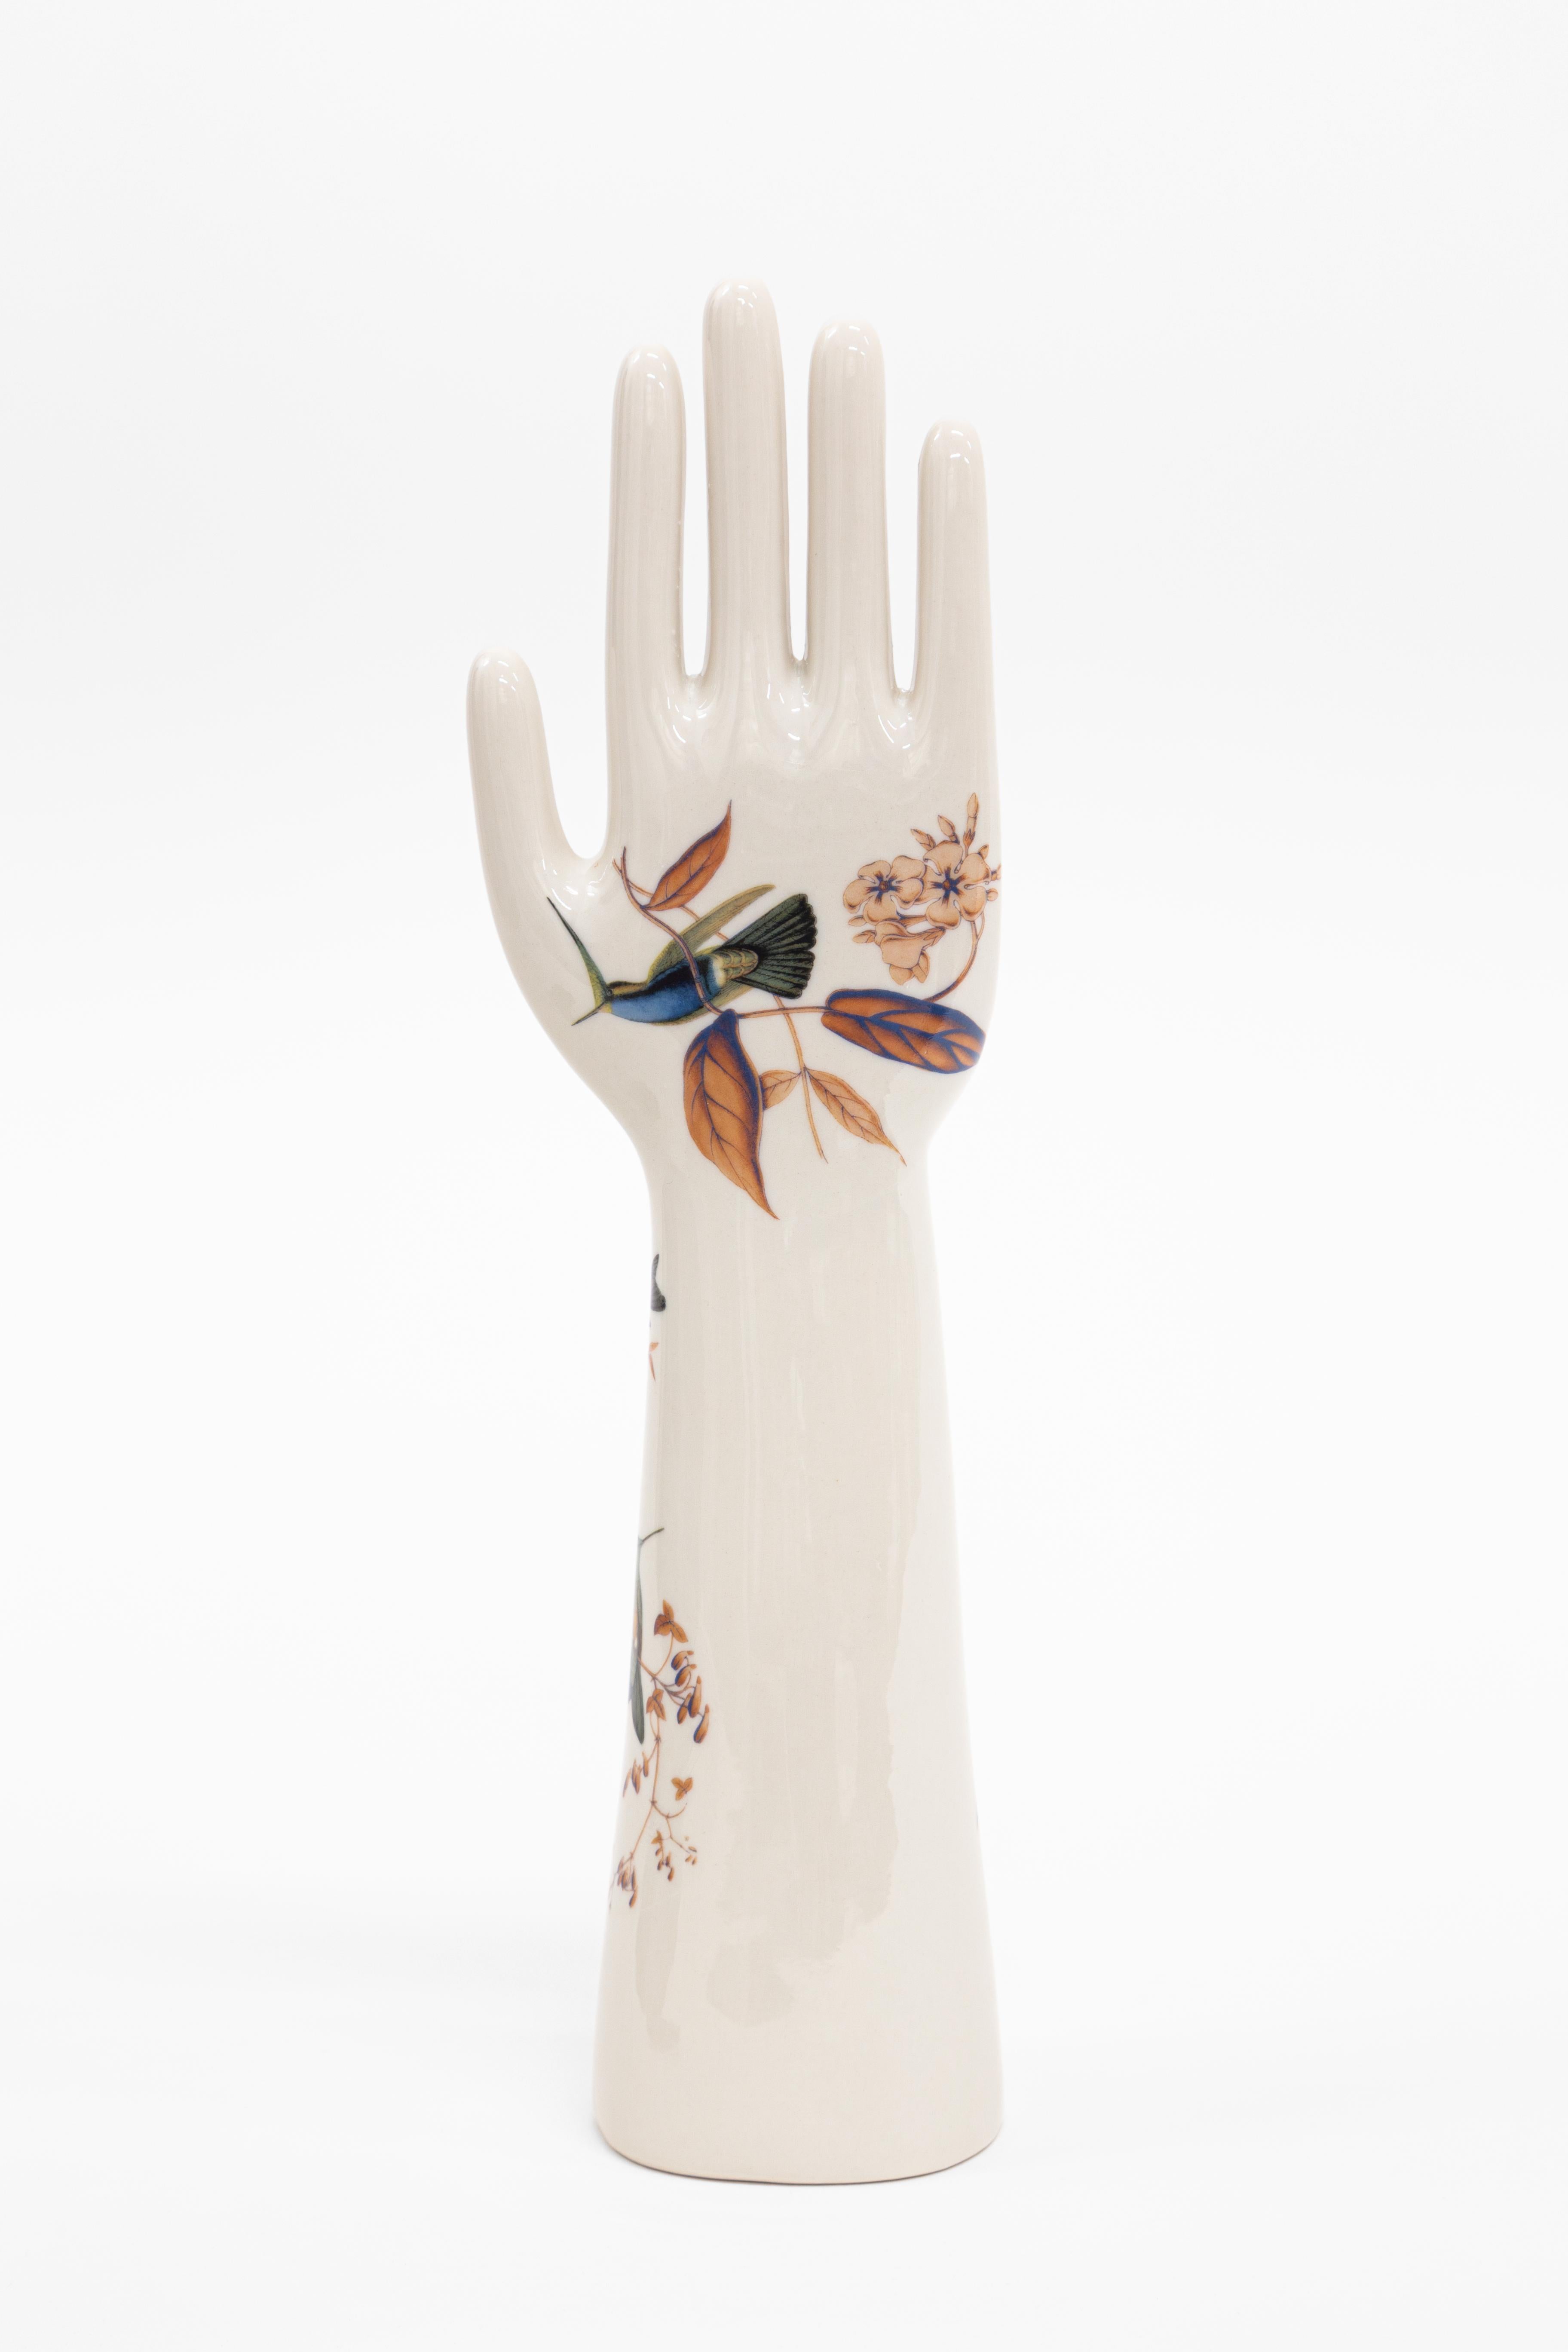 Le mani in porcellana della collezione Anatomica, creata da Vito Nesta per il suo brand Grand Tour, sono un oggetto di design intramontabile e di grande valore decorativo. La produzione di queste porcellane è affidata a Fratelli Majello che dal 1867